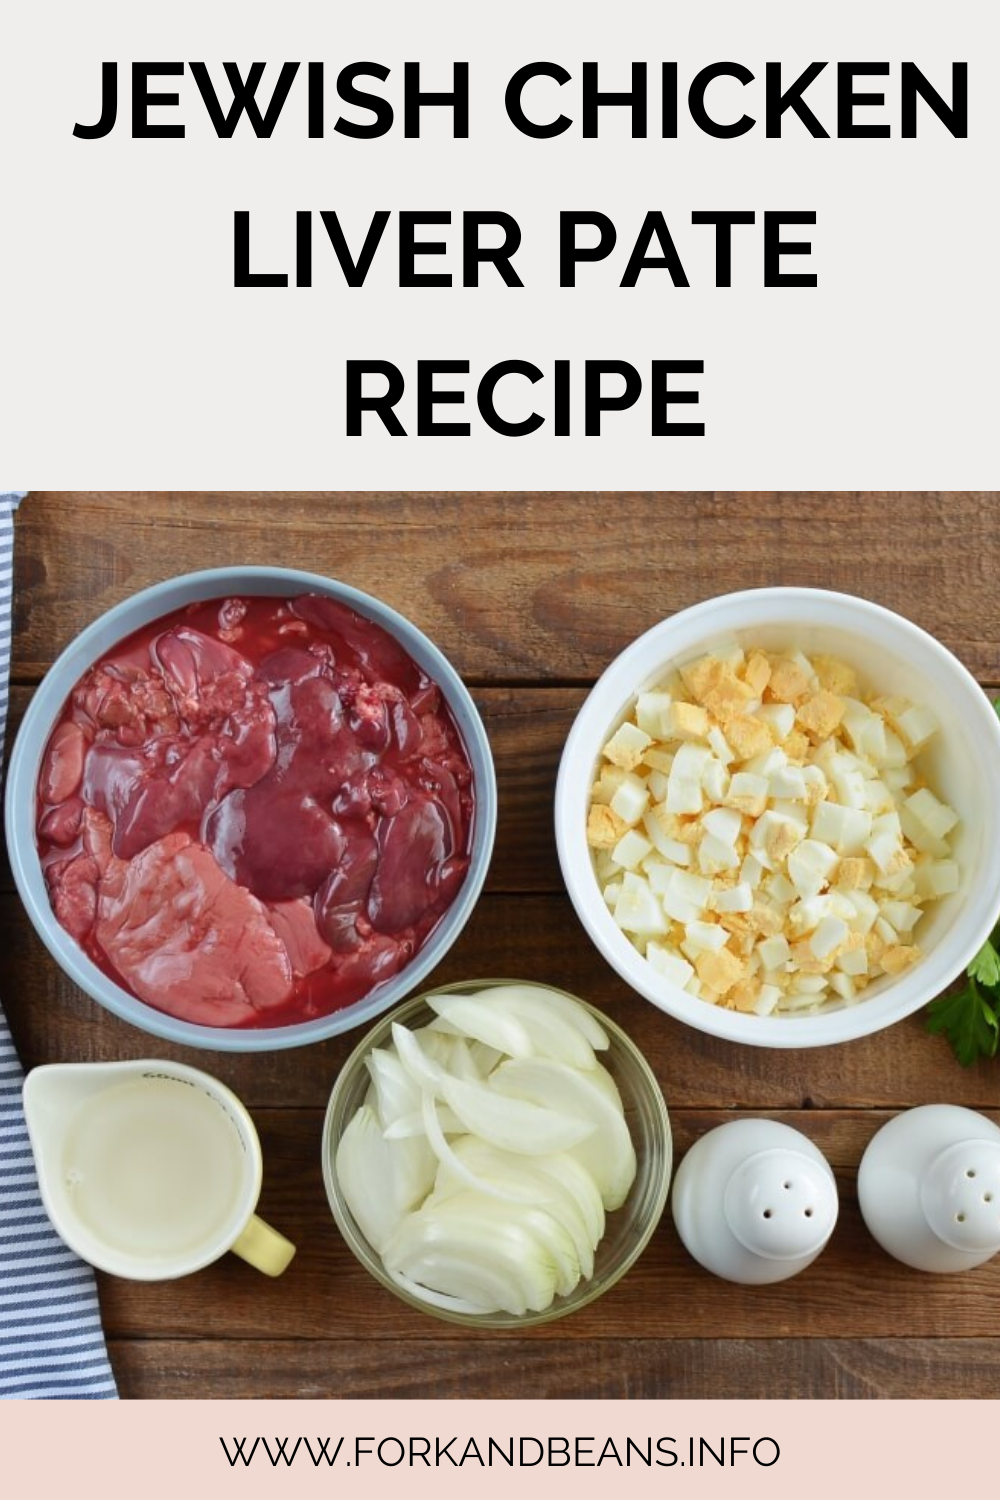 Recipes for Deli: Chopped Liver